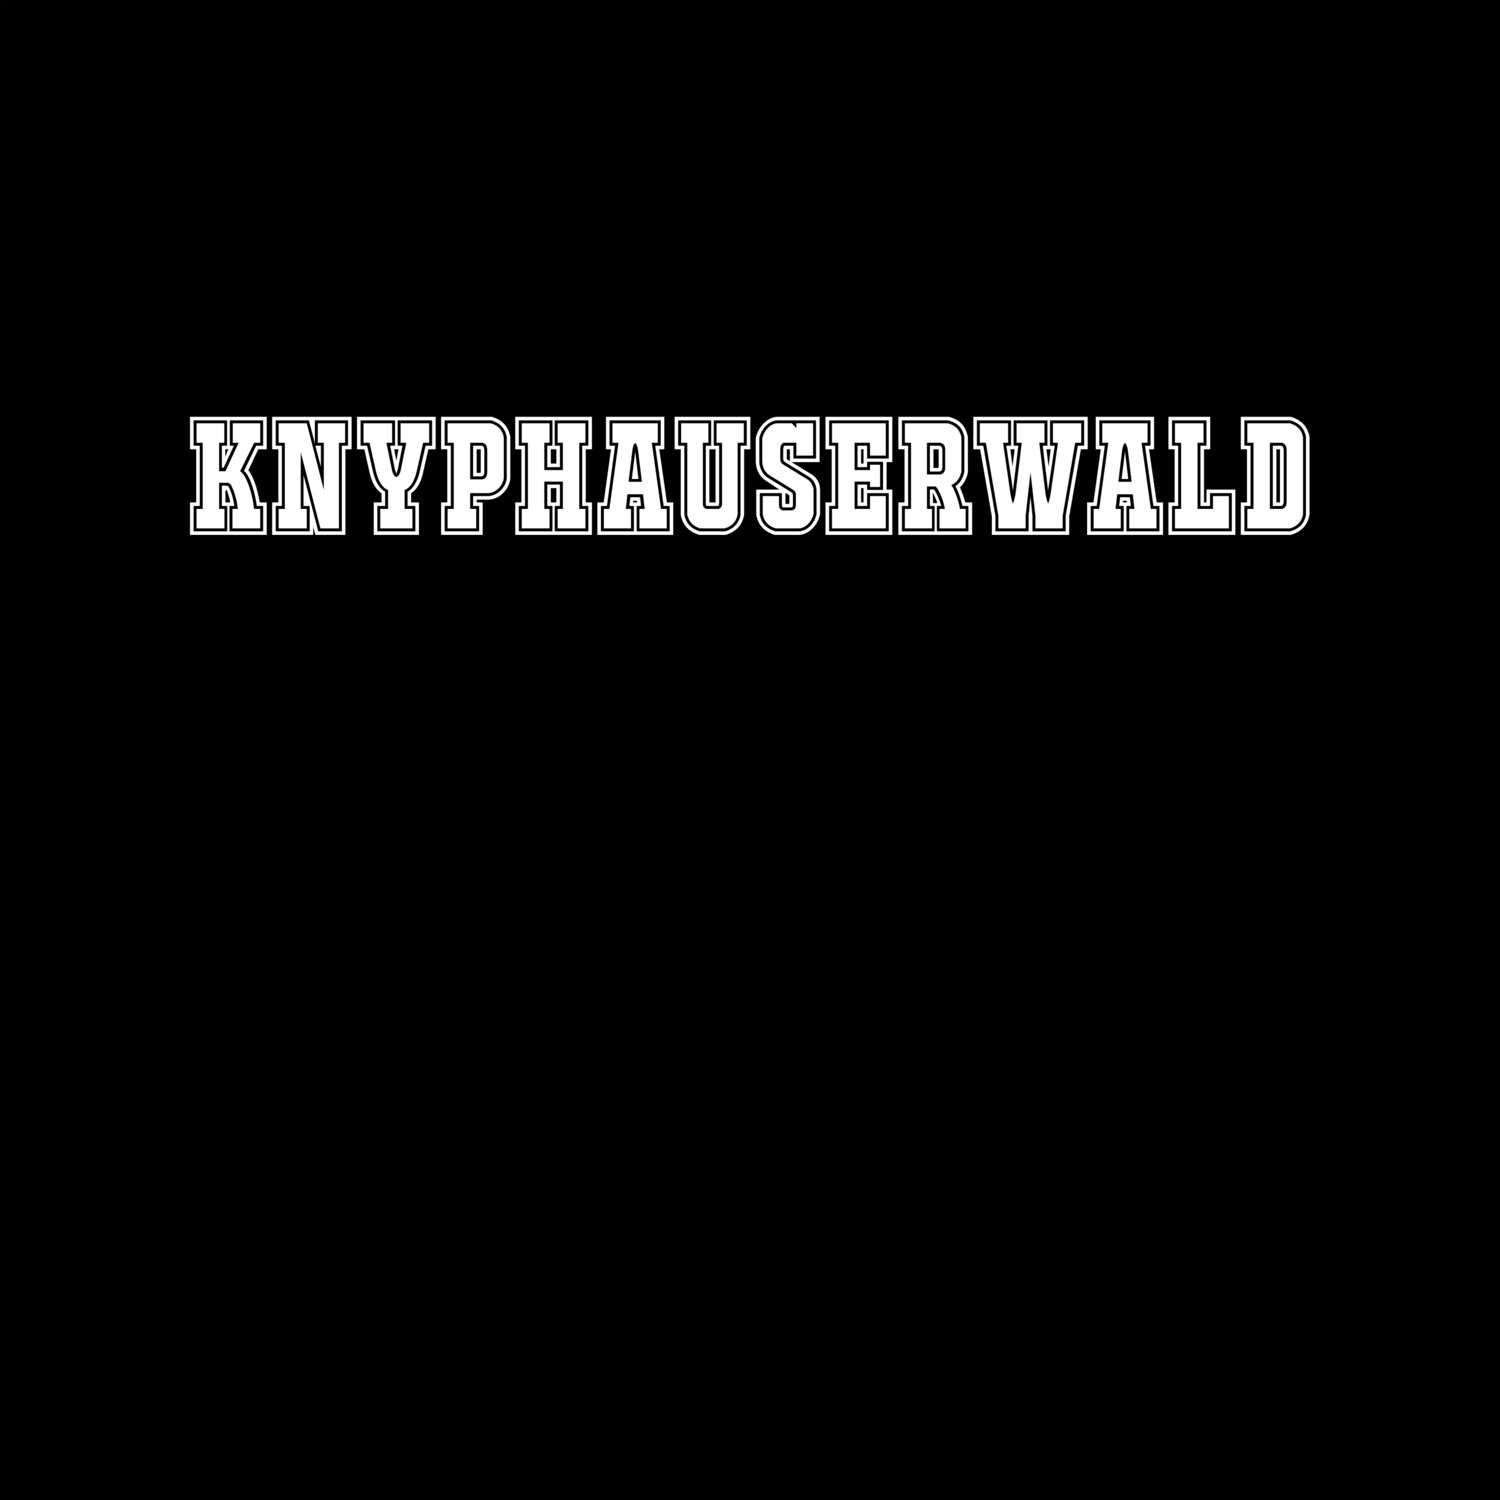 Knyphauserwald T-Shirt »Classic«